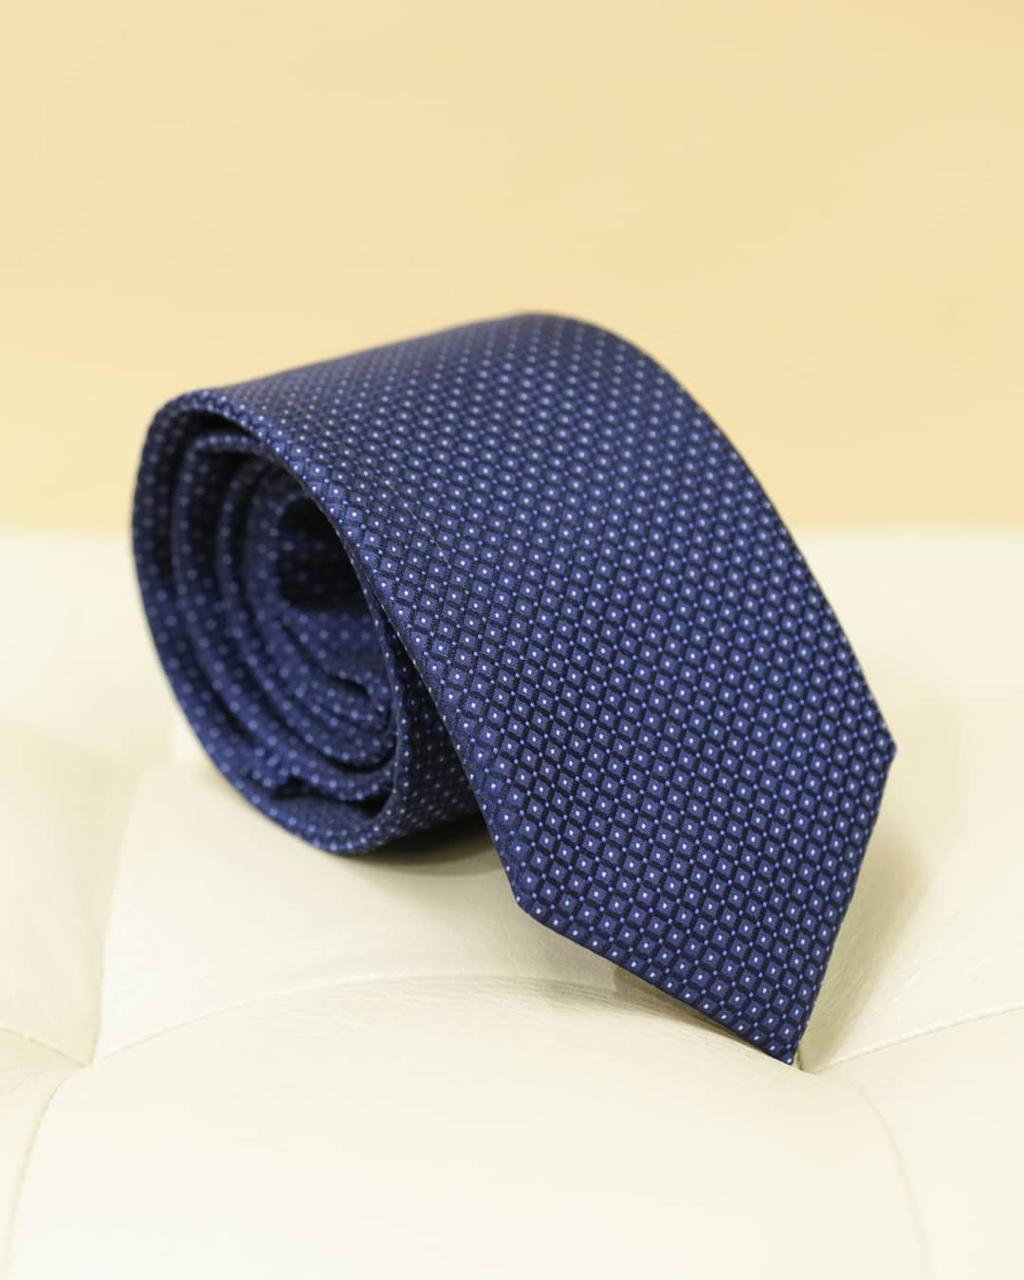 Мужской галстук №13, фото 1